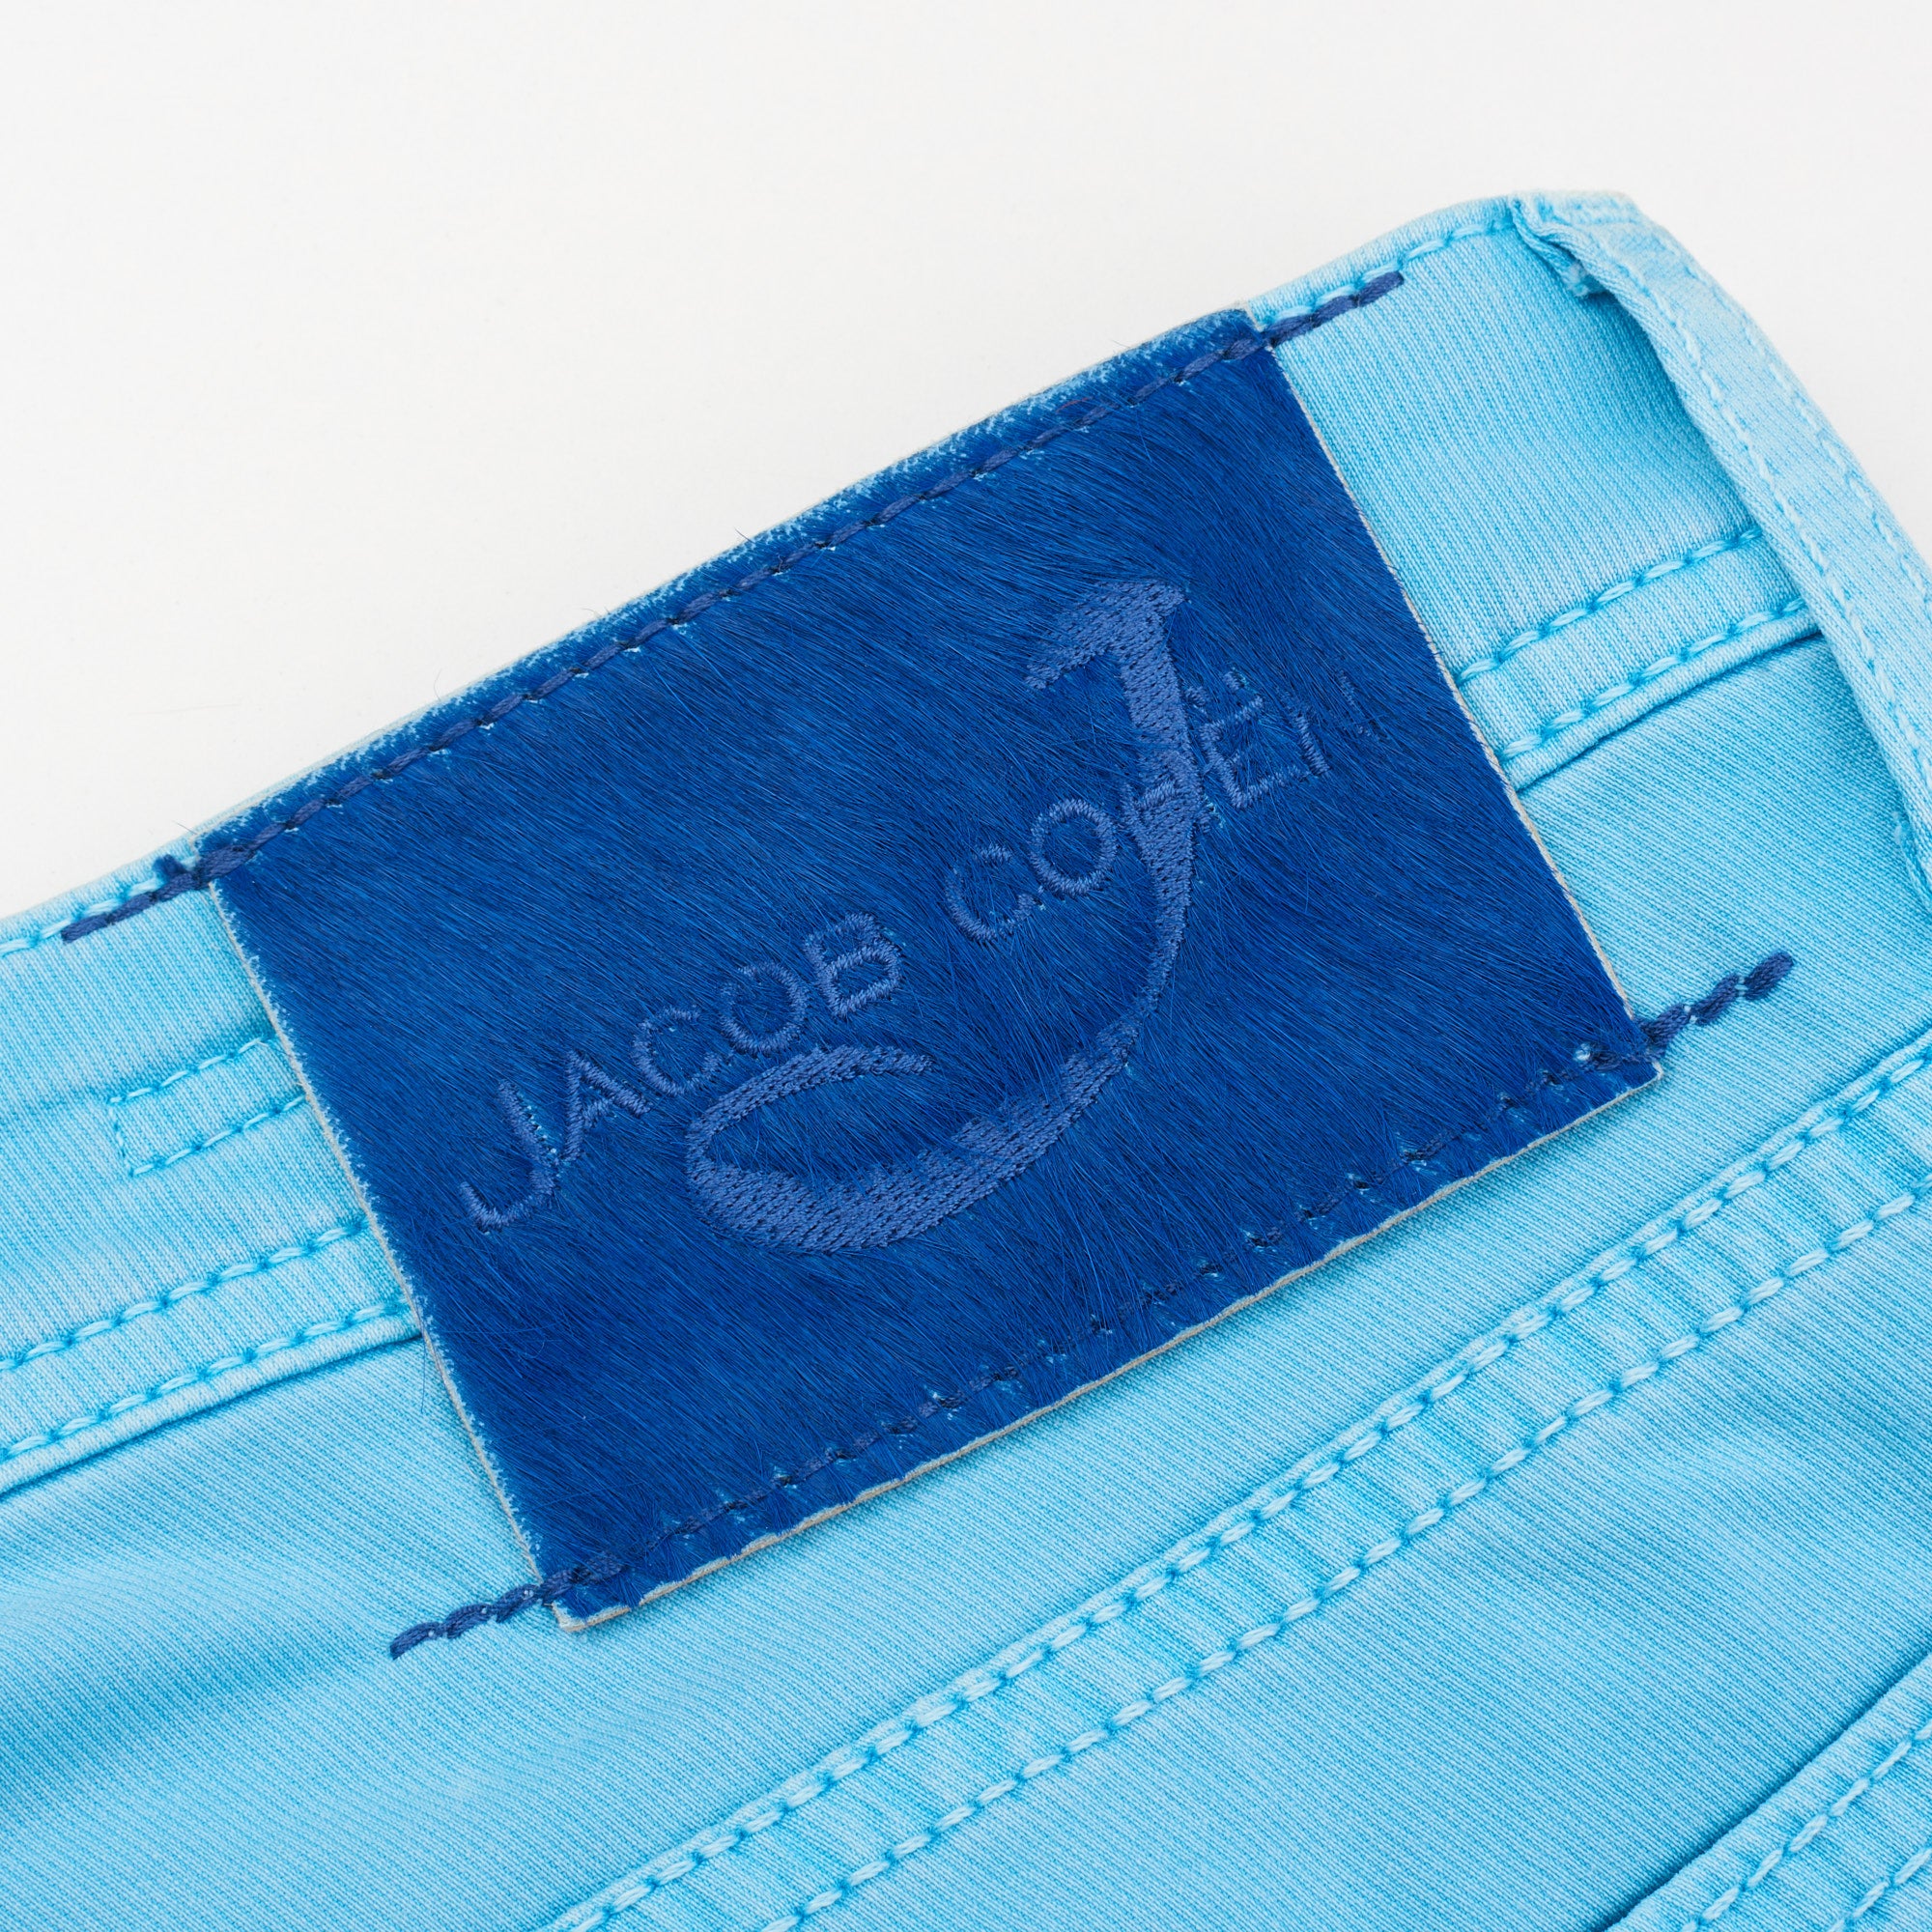 JACOB COHEN J688 Comfort Vintage Light Blue Cotton Stretch Slim Fit Jeans Pants US 33 JACOB COHEN